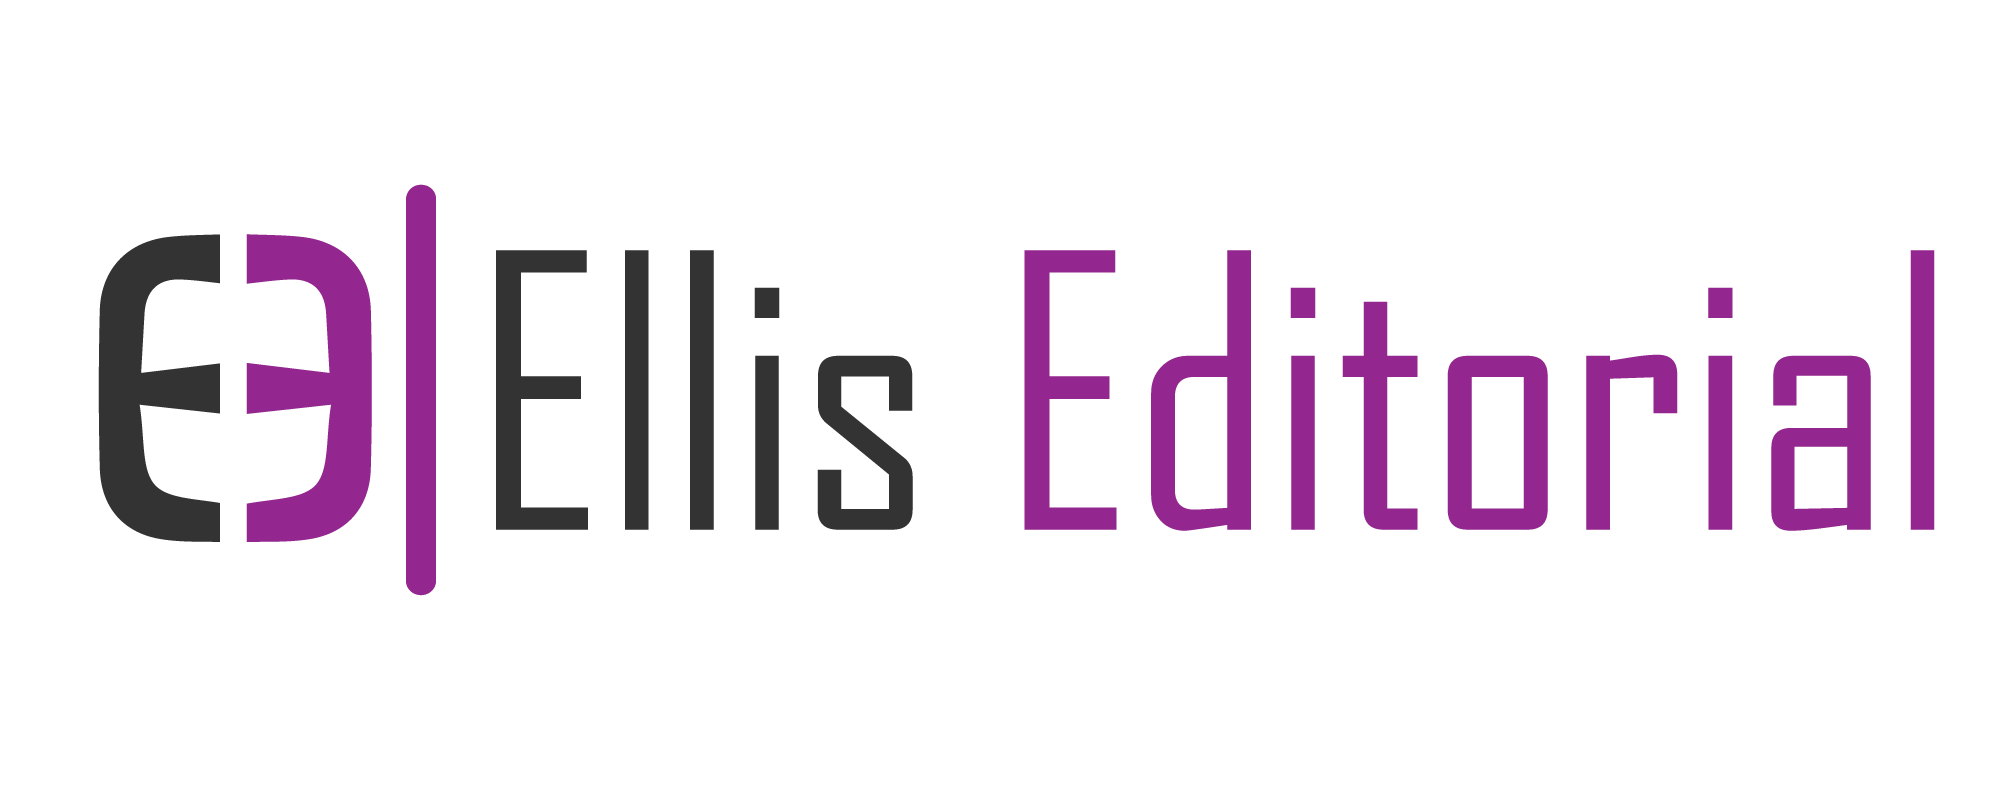 Ellis Editorial